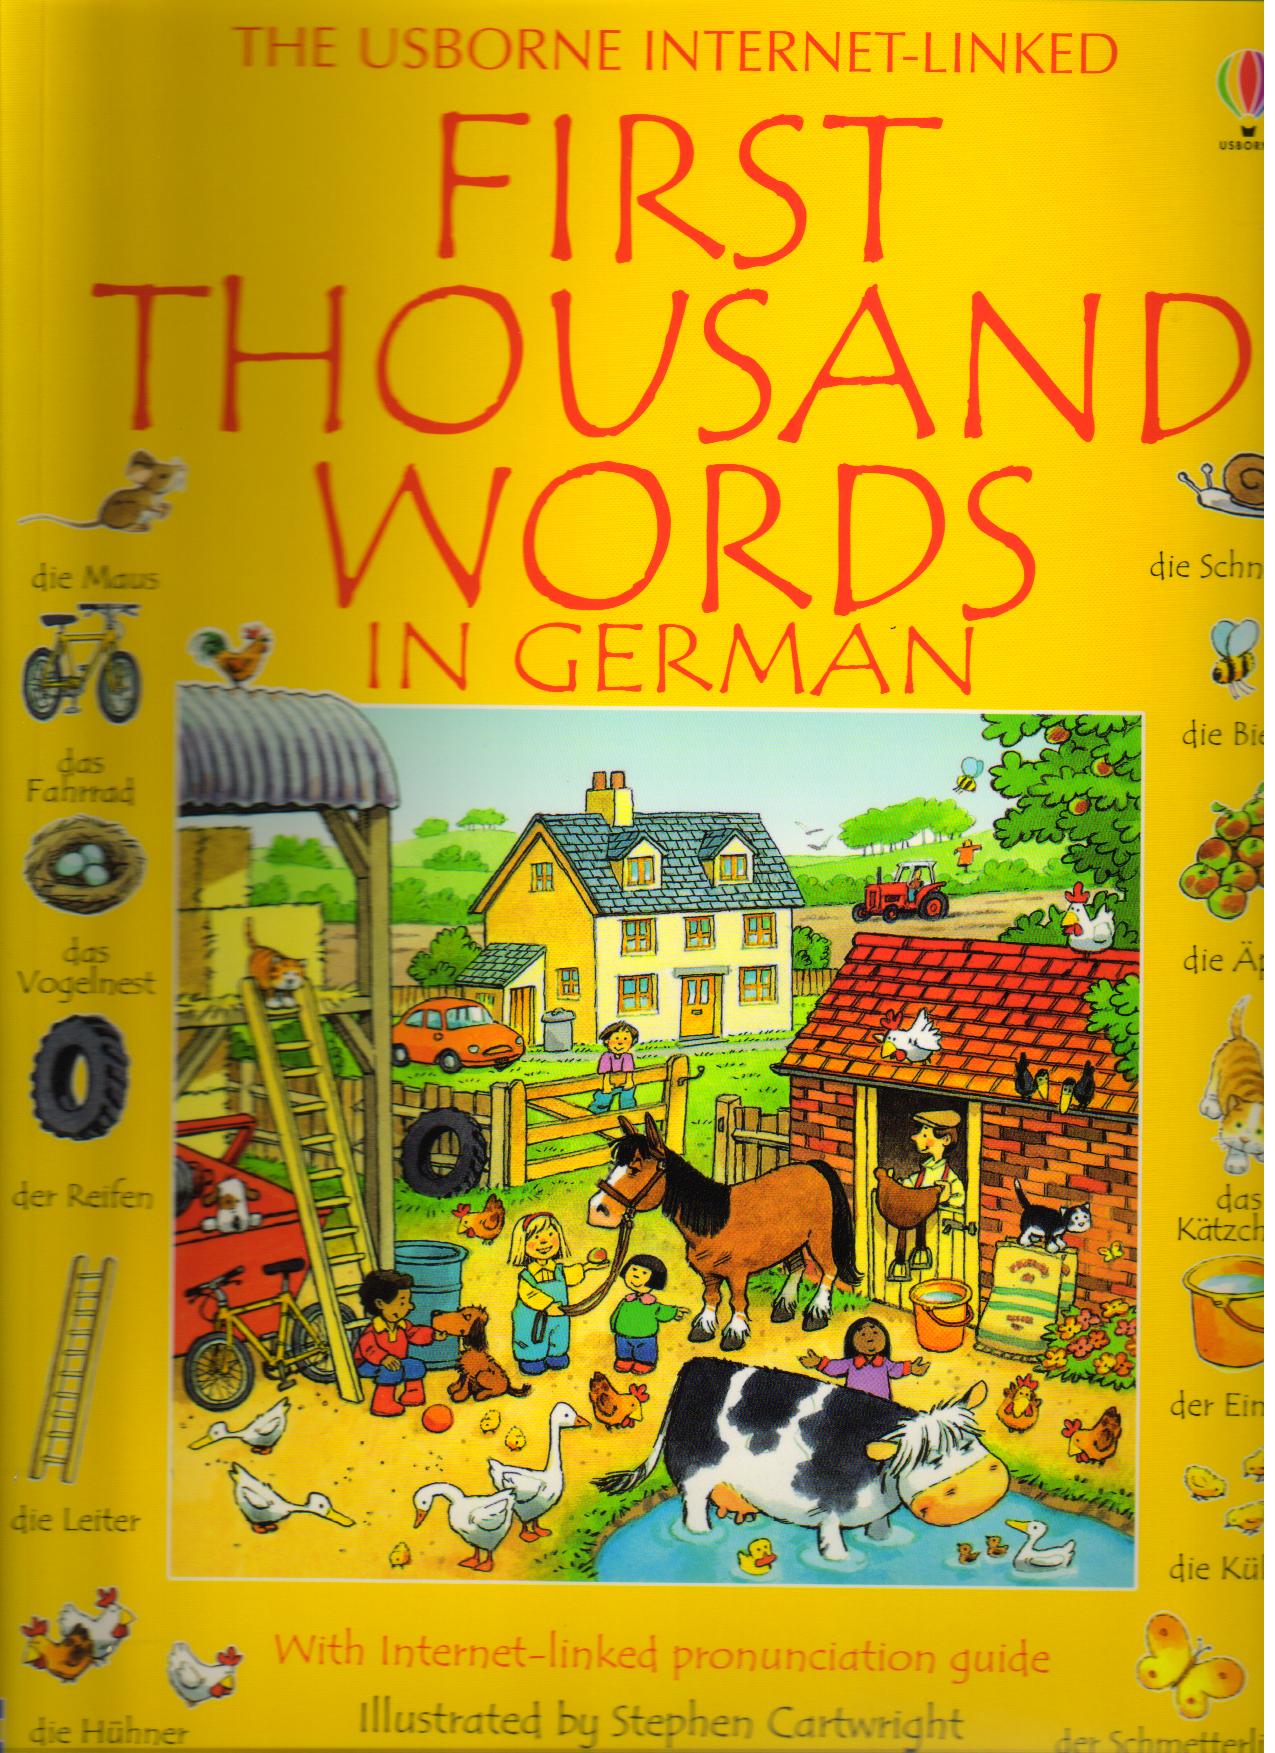 First Thousand Words in German Obrázkový slovník němčiny pro děti